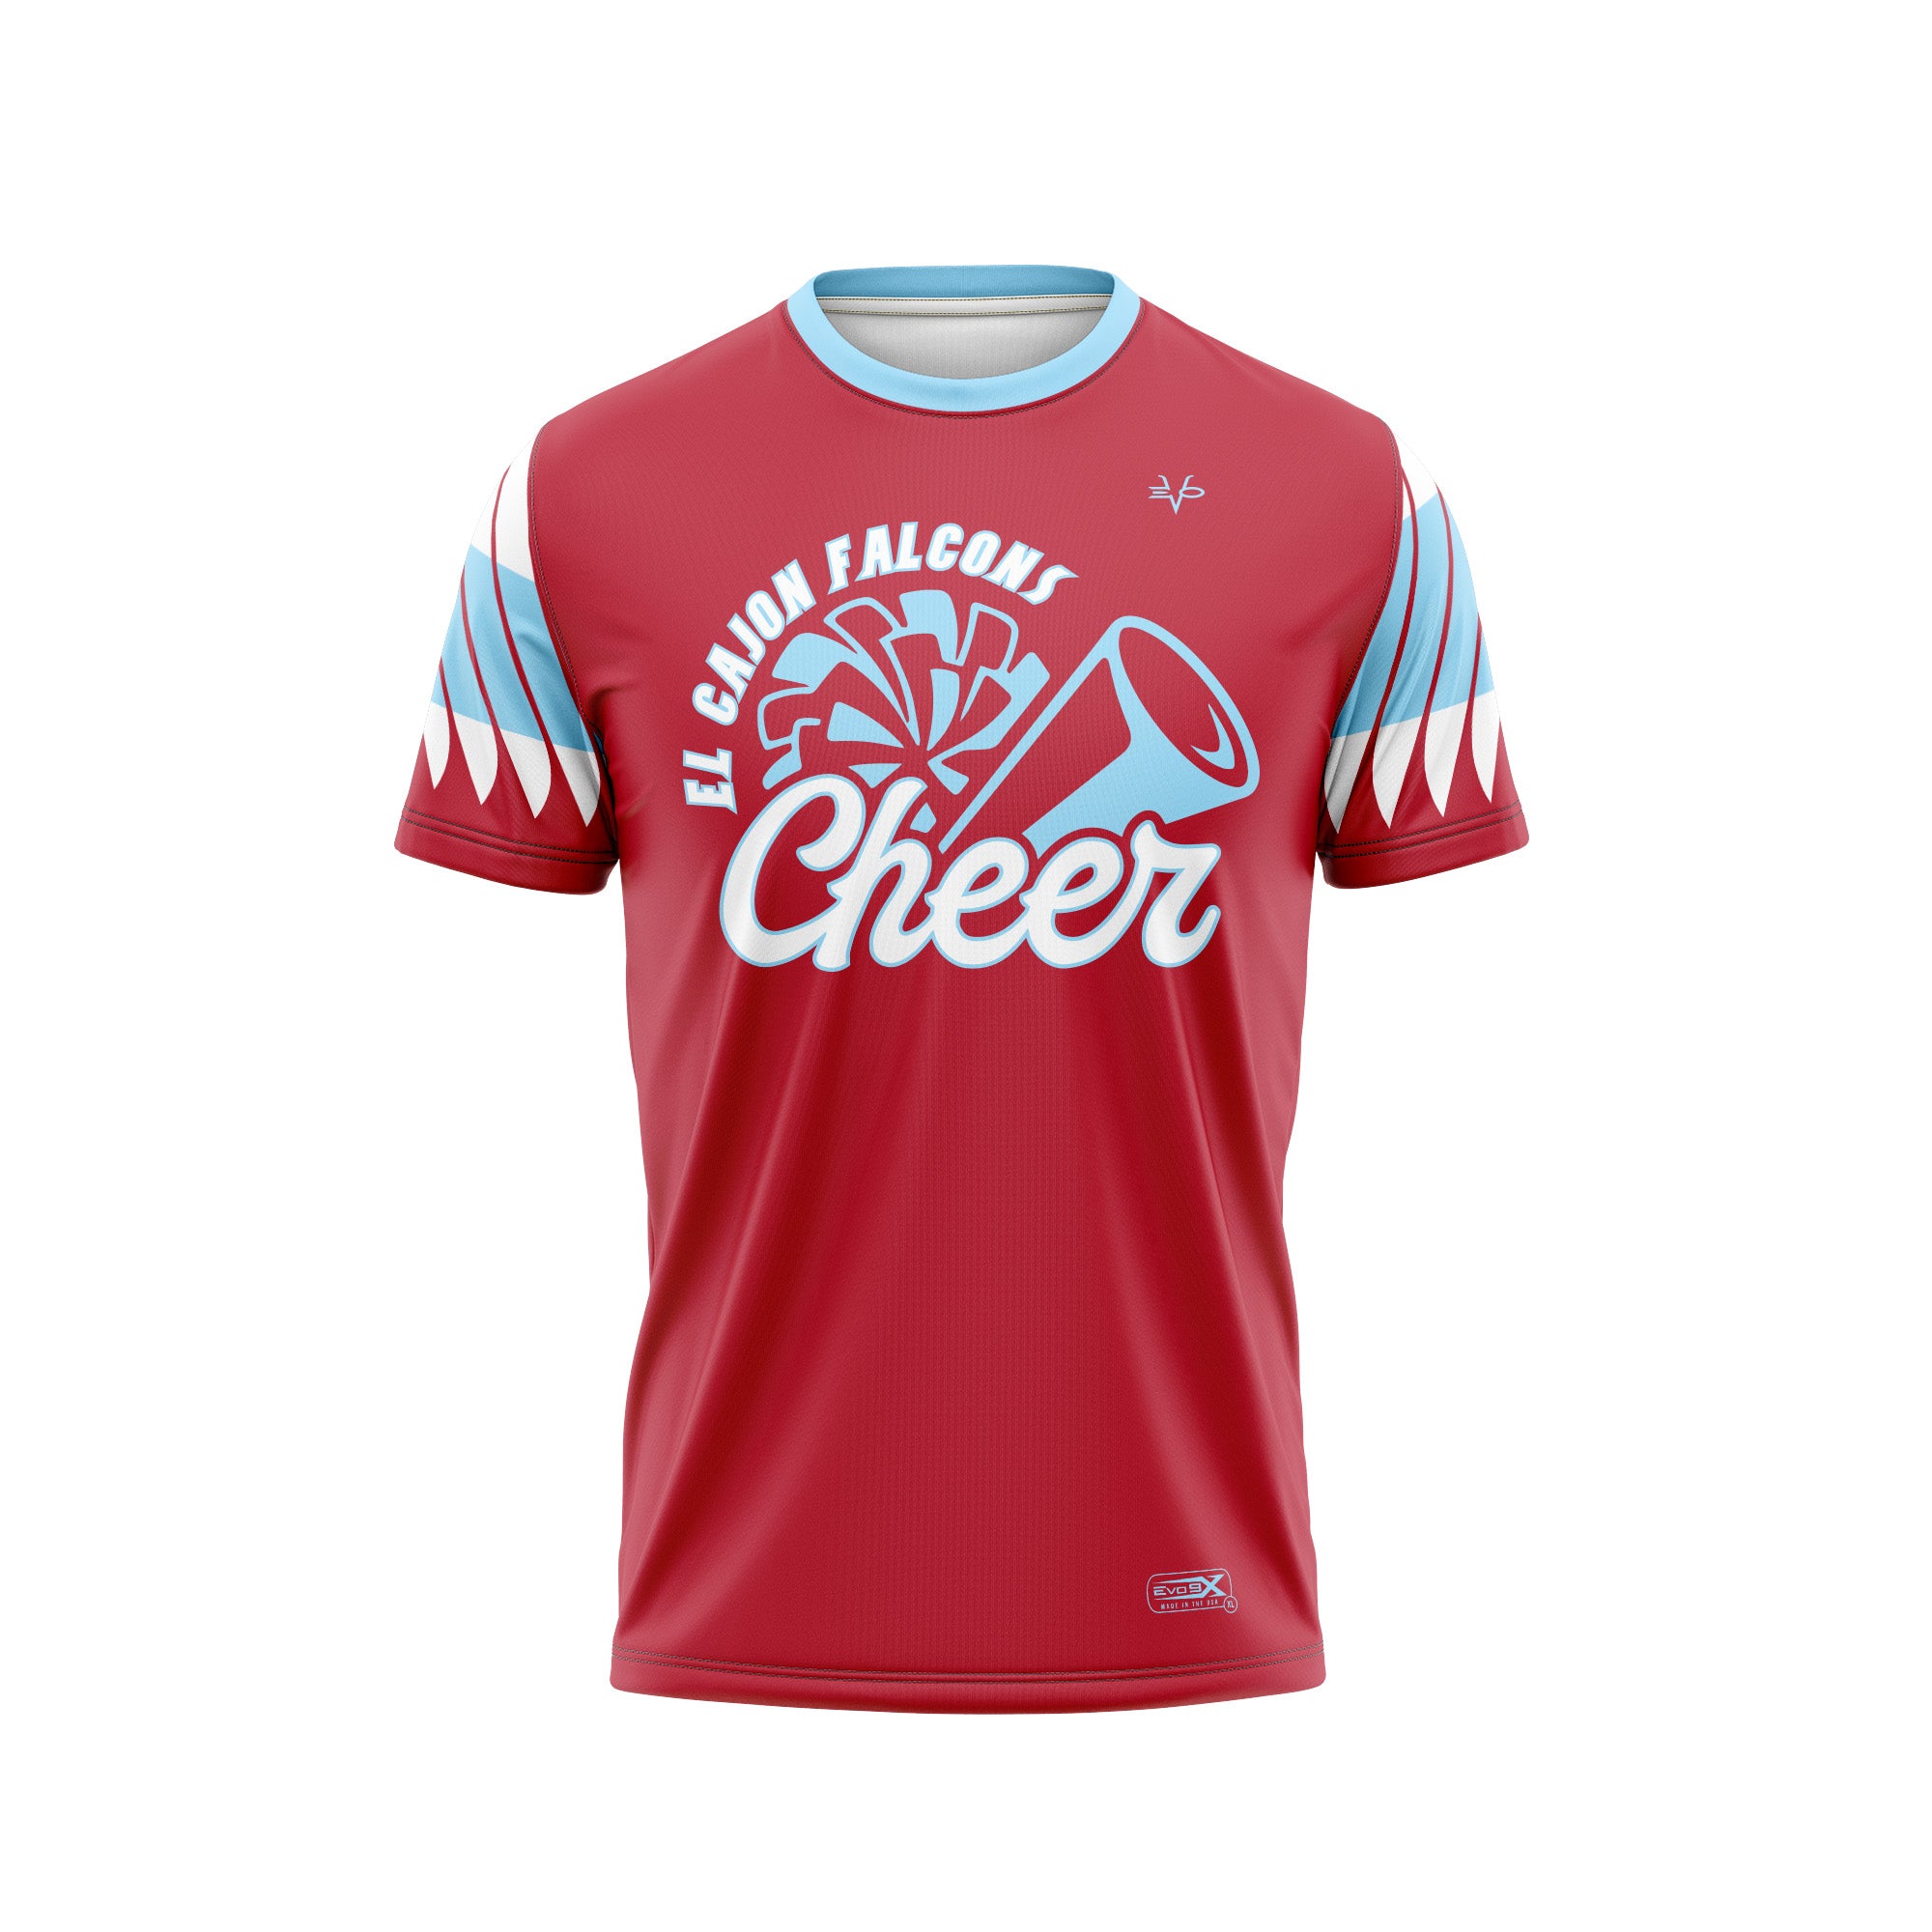 El Cajons Cheer CREW NECK T-Shirt